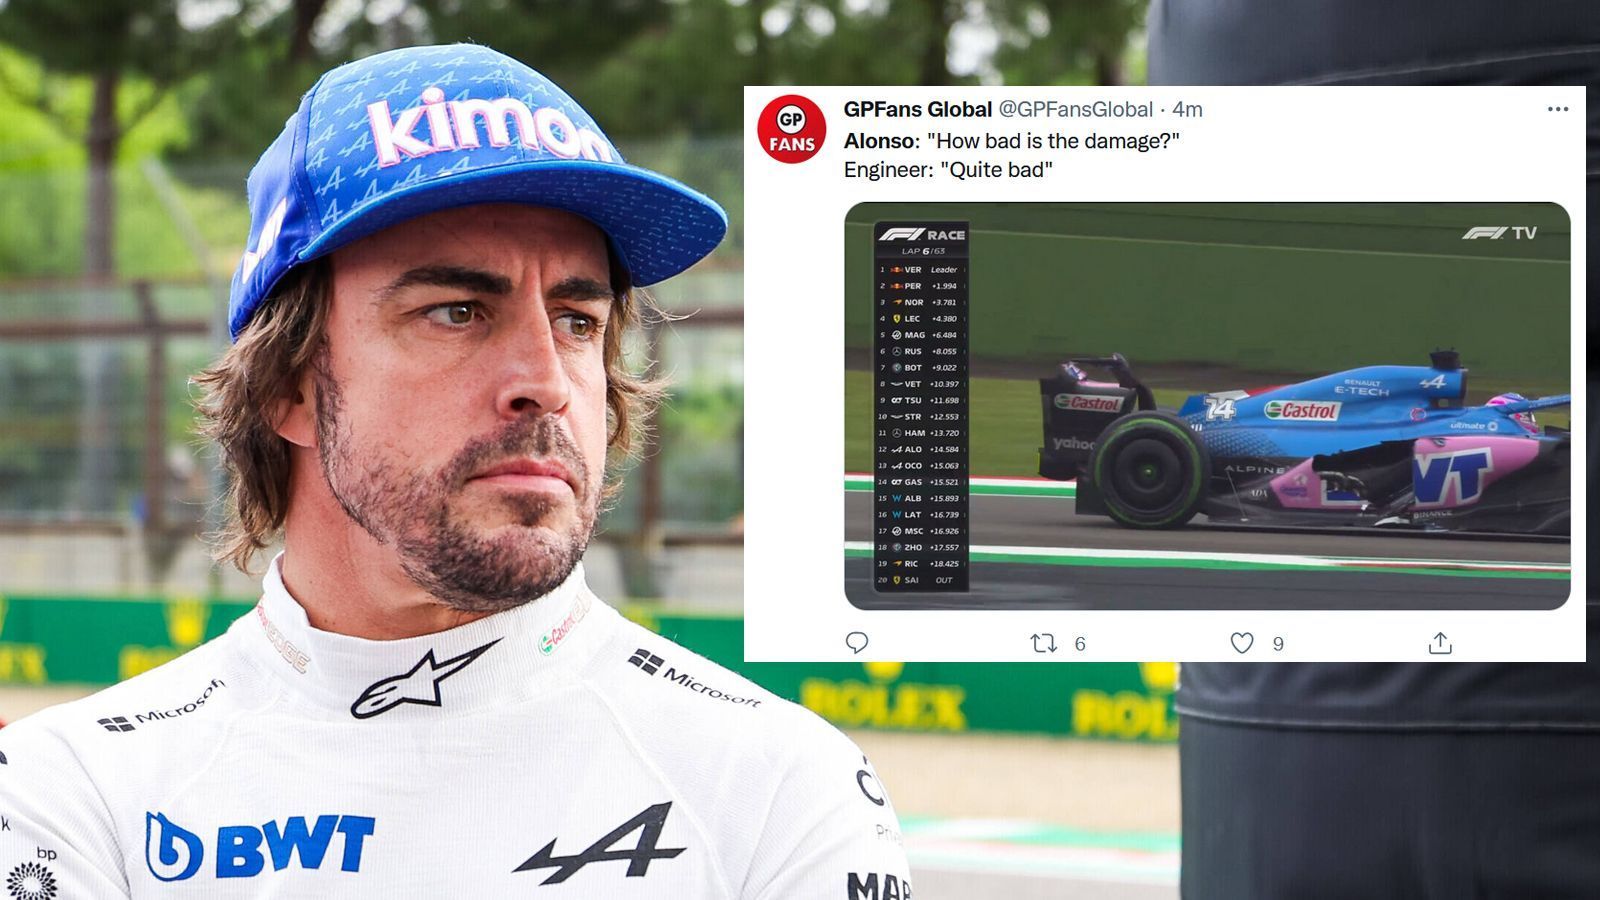 
                <strong>Fernando Alonso fällt früh aus</strong><br>
                "Wie schlimm ist der Schaden" fragte Fernando Alonso seine Crew nachdem er bereits früh im Rennen von Mick Schumacher erwischt wurde. Die Antwort per Funkspruch war eindeutig: "Ziemlich schlimm". Für den Spanier ging es nicht mehr weiter.
              